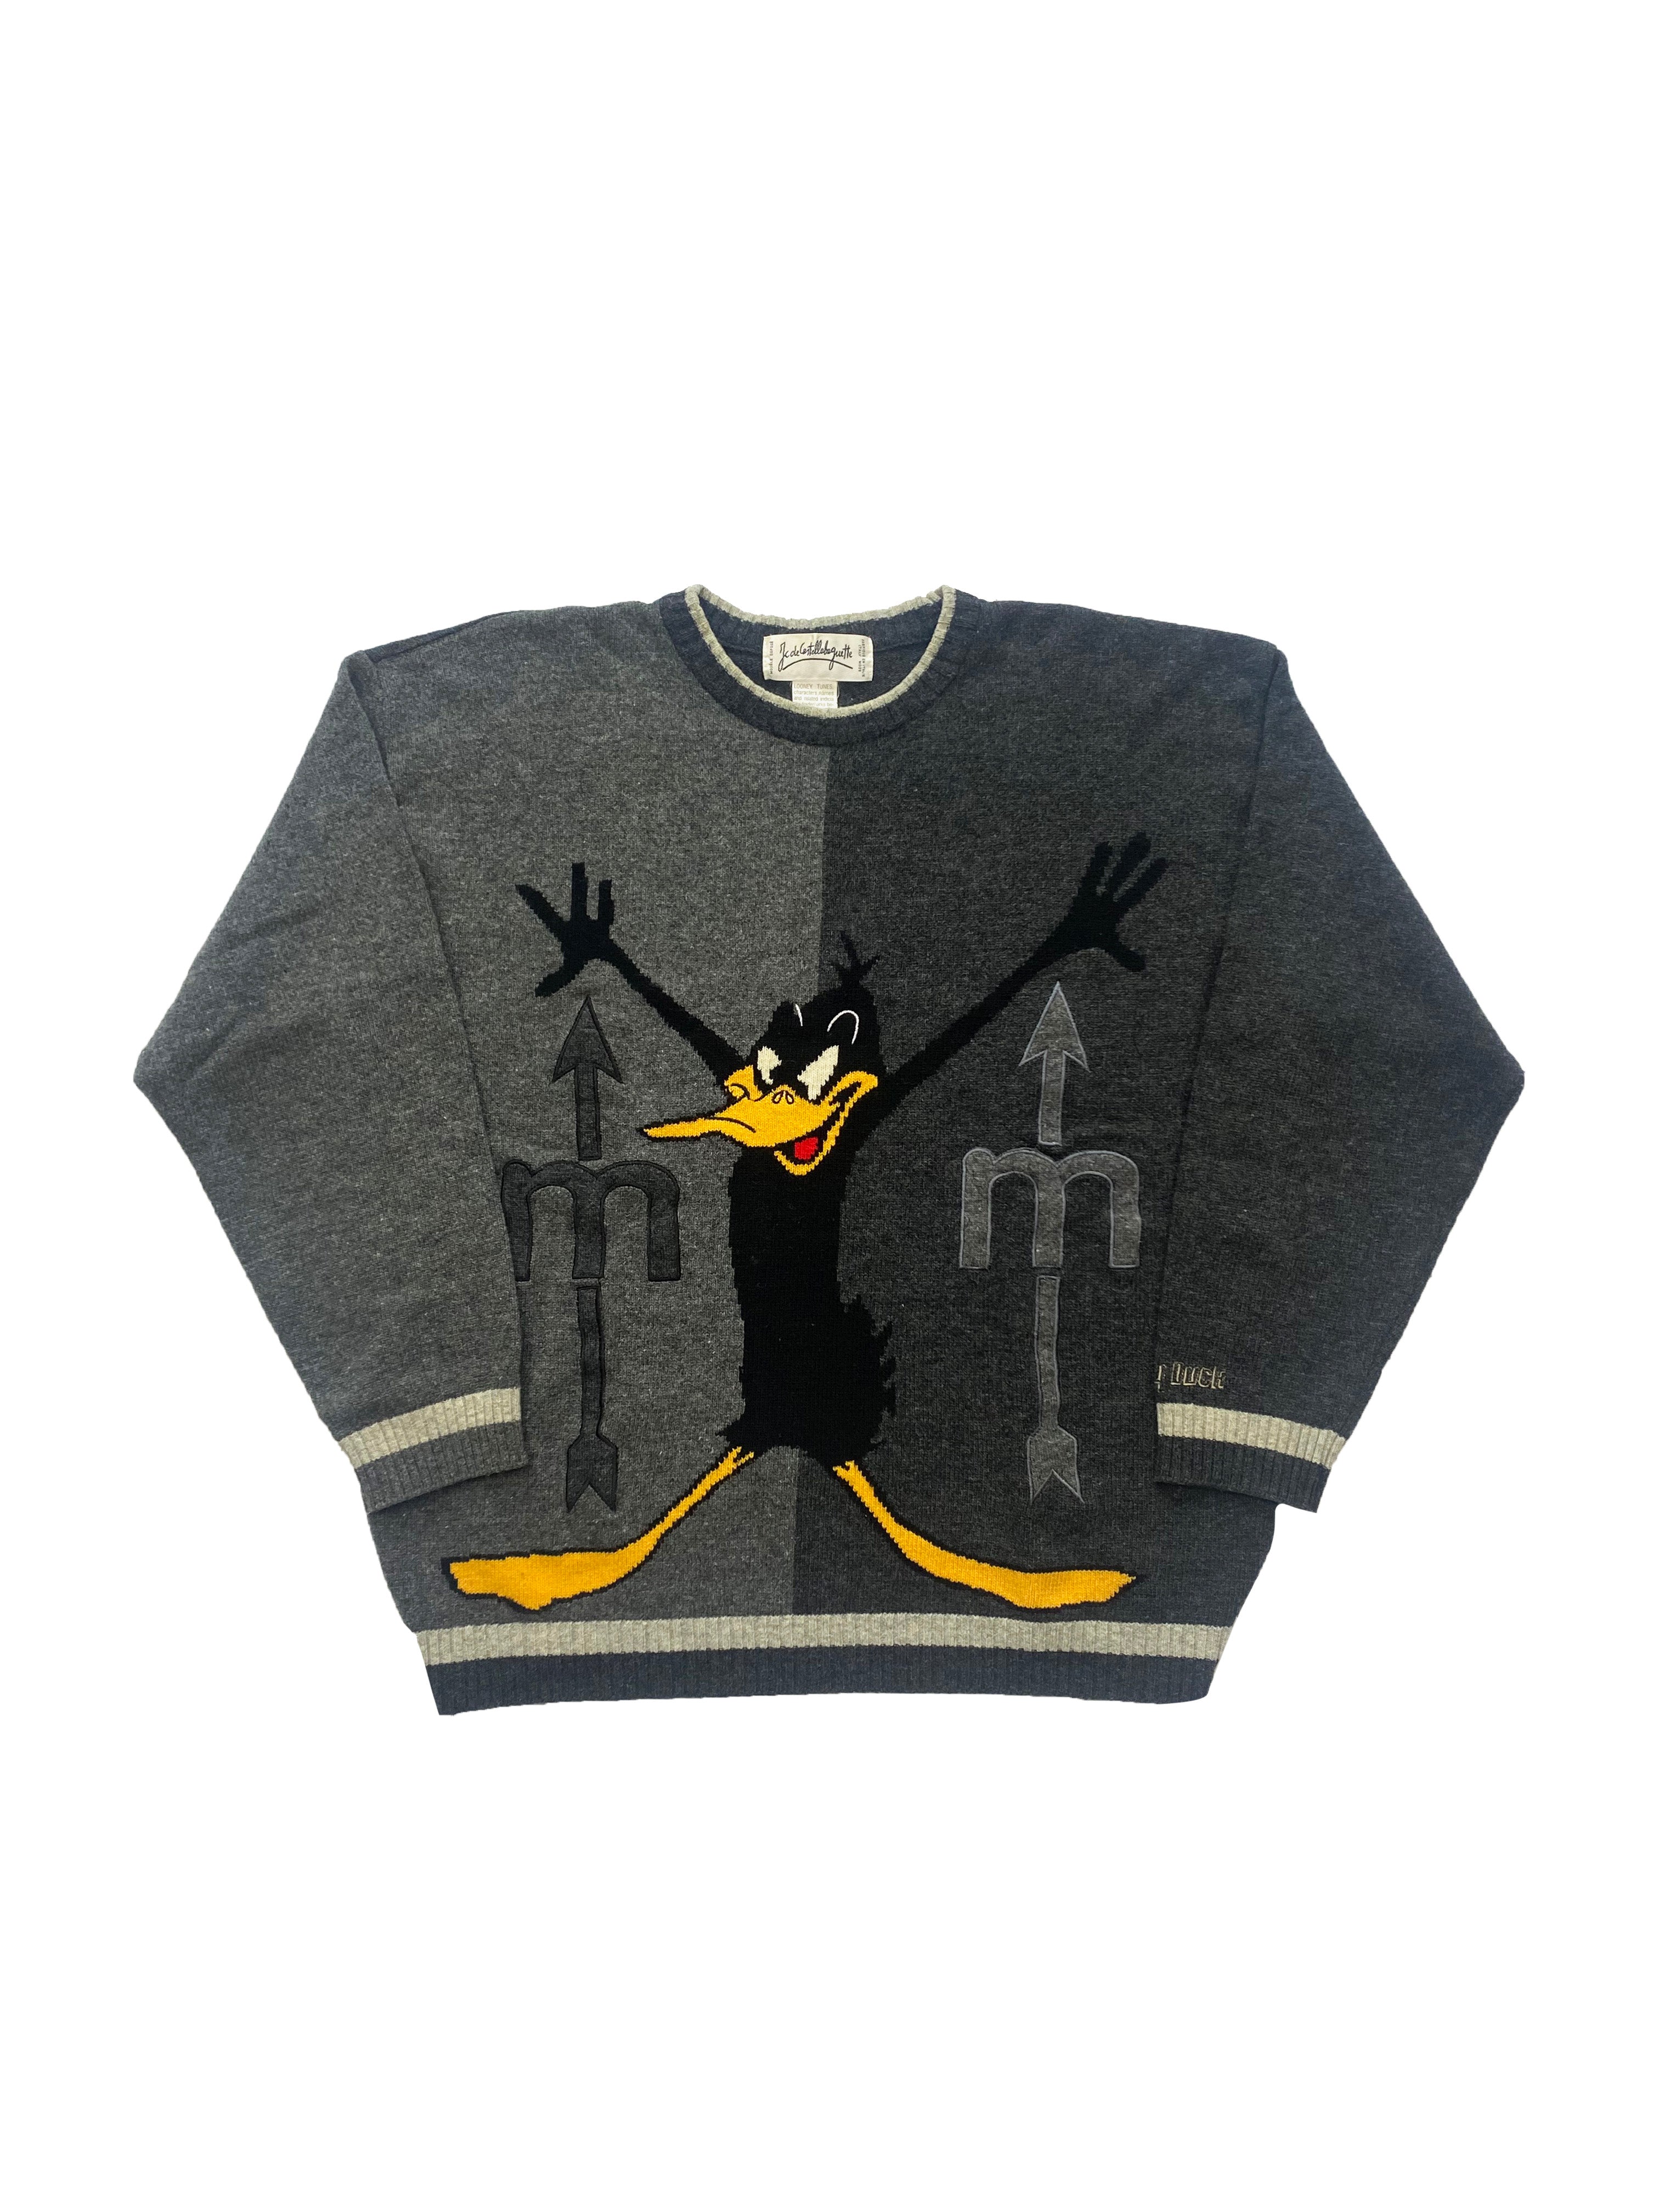 Castelbajac Daffy Duck Knit 1997